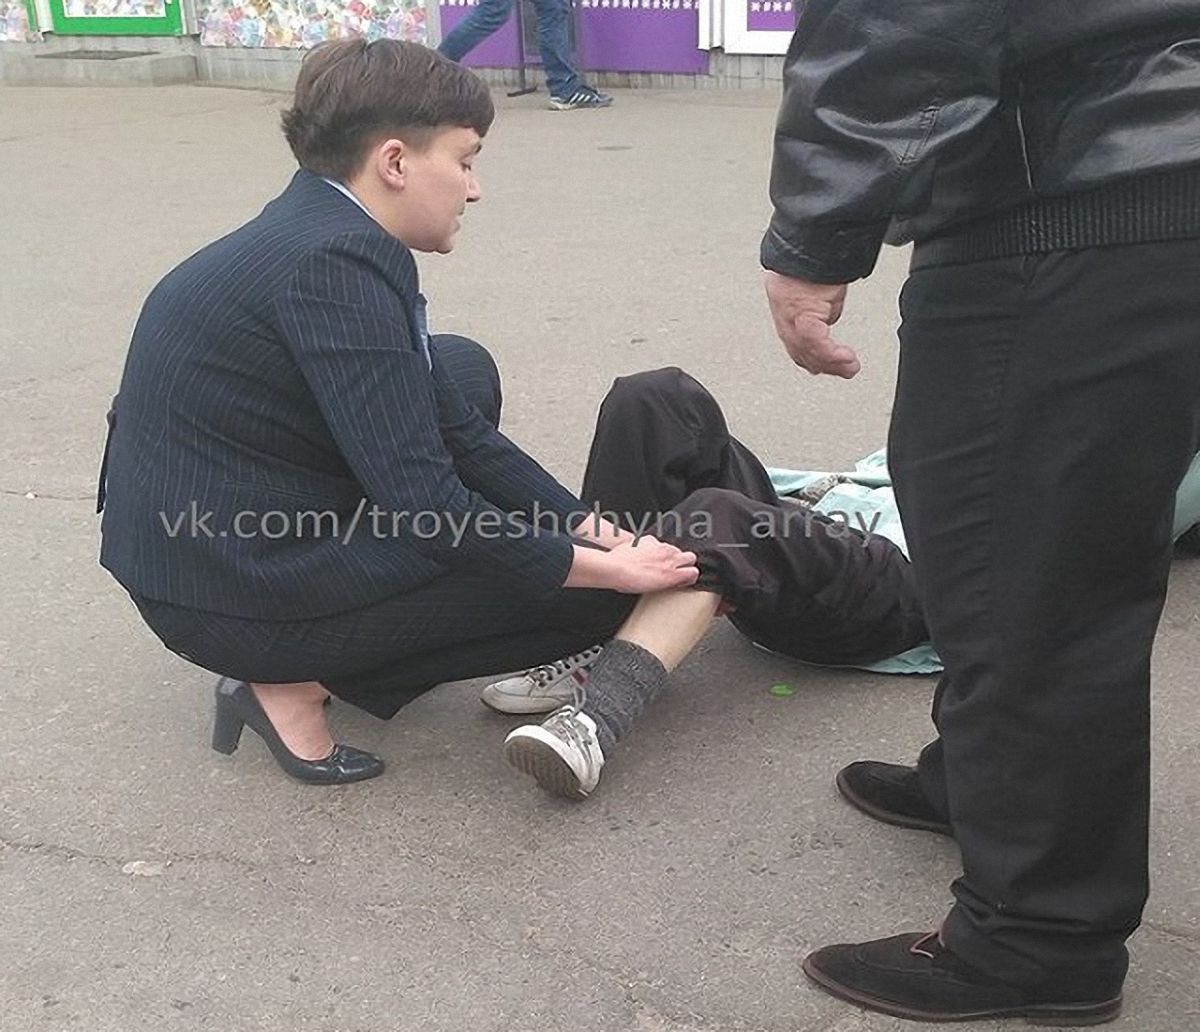 Надежда Савченко оказывала первую помощь пострадавшей - фото 1